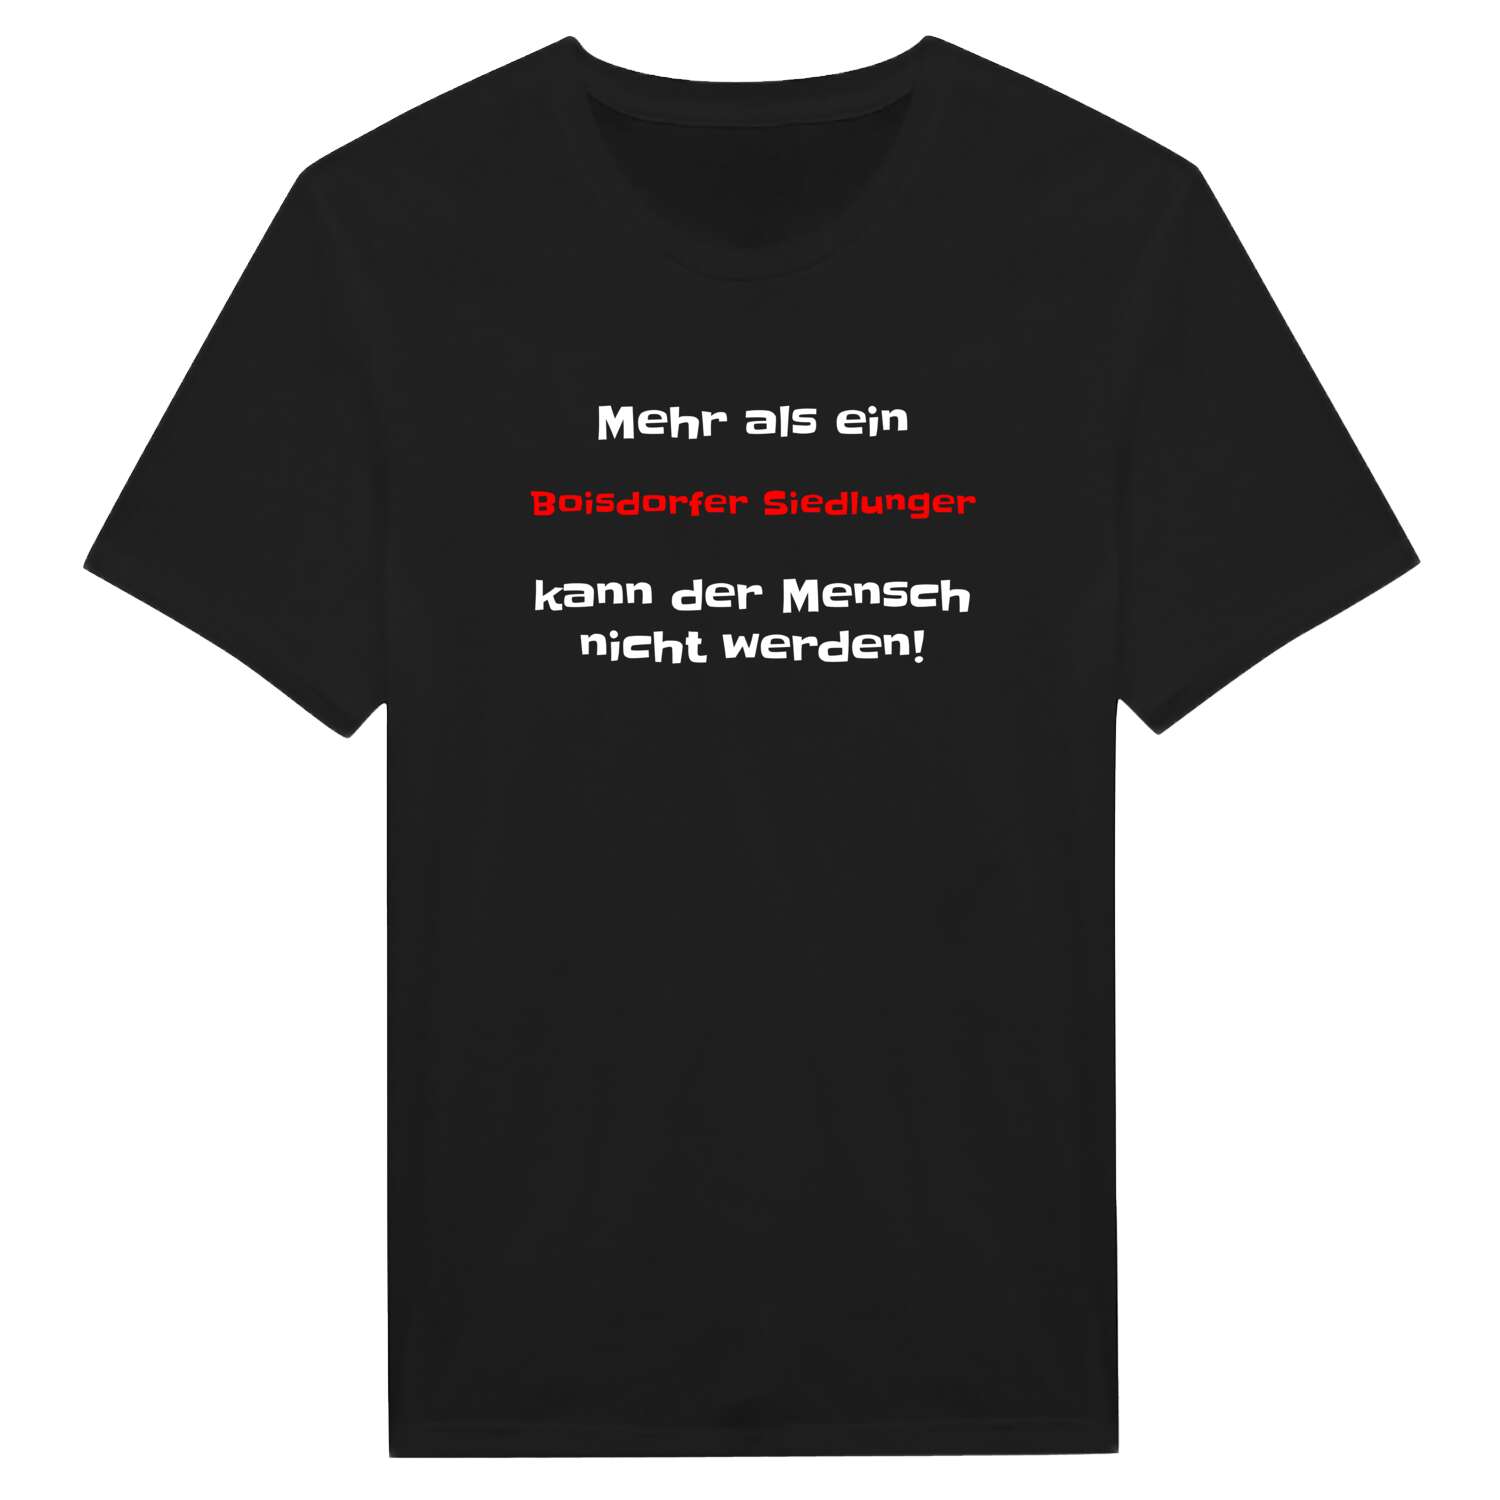 Boisdorfer Siedlung T-Shirt »Mehr als ein«